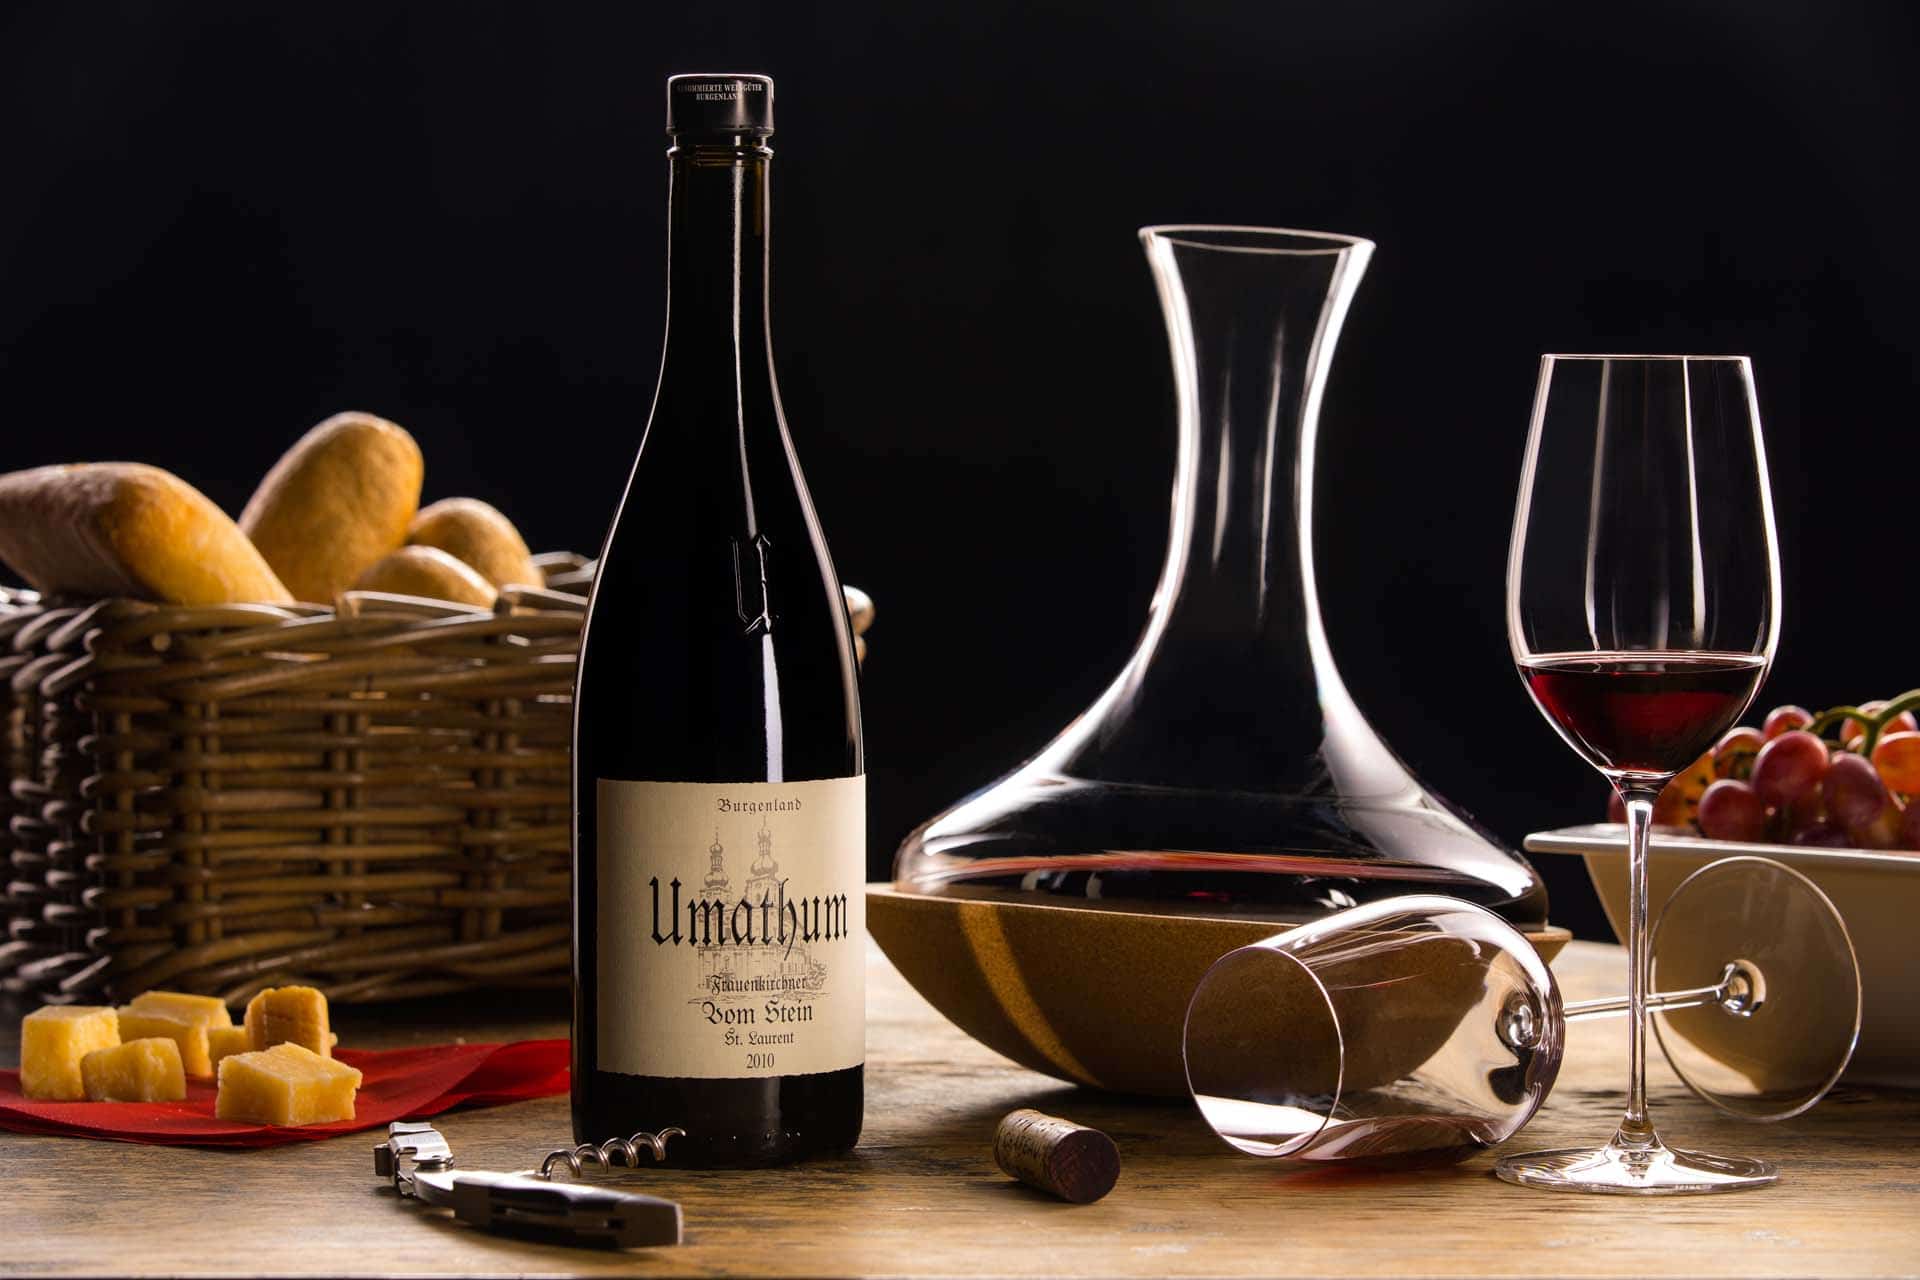 Umathum Weinflasche Produktfoto mit Gläsern